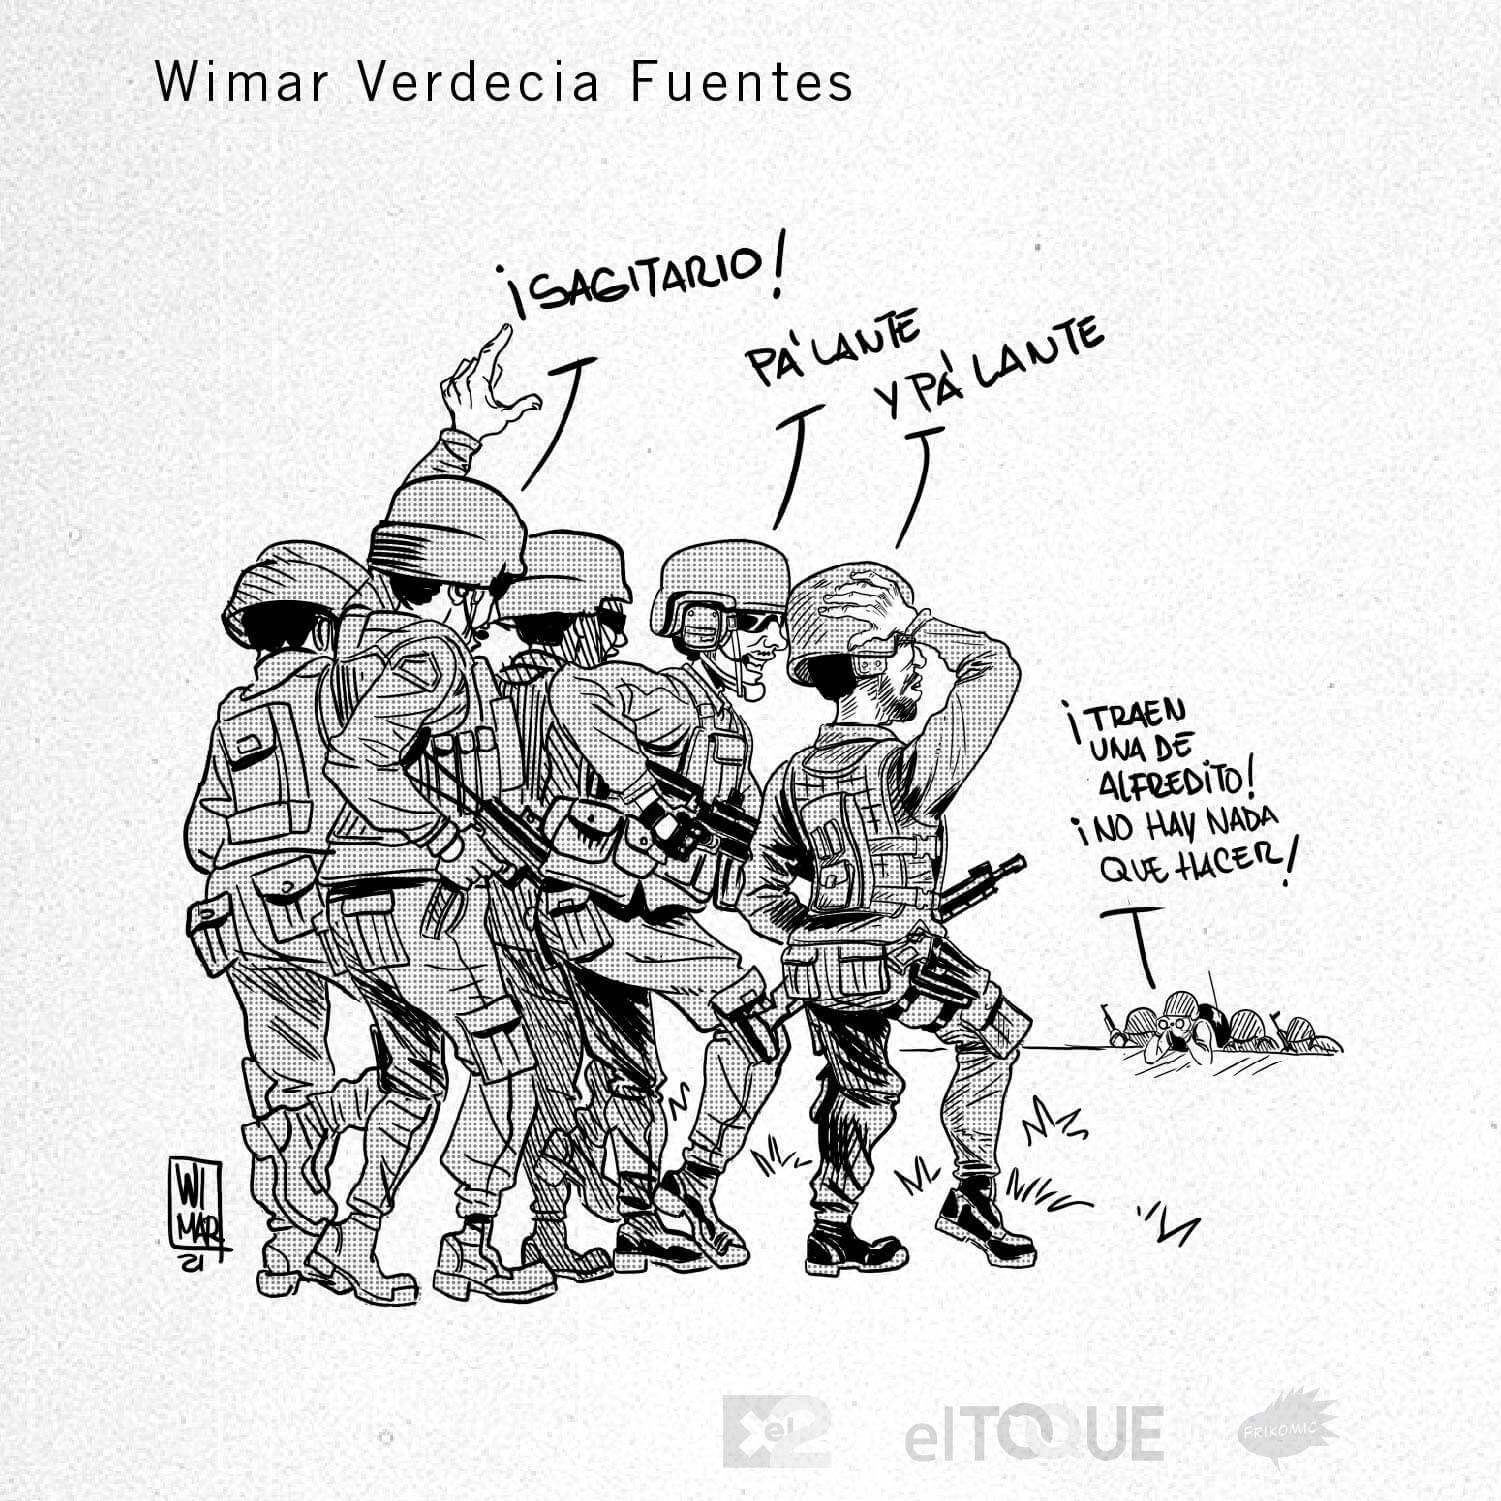 21-03-Verdecia-Wimar-GUERRITA-DE-CANCIONES-PATRIA-Y-VIDA-PATRIA-O-MUERTE-CUBA.jpg